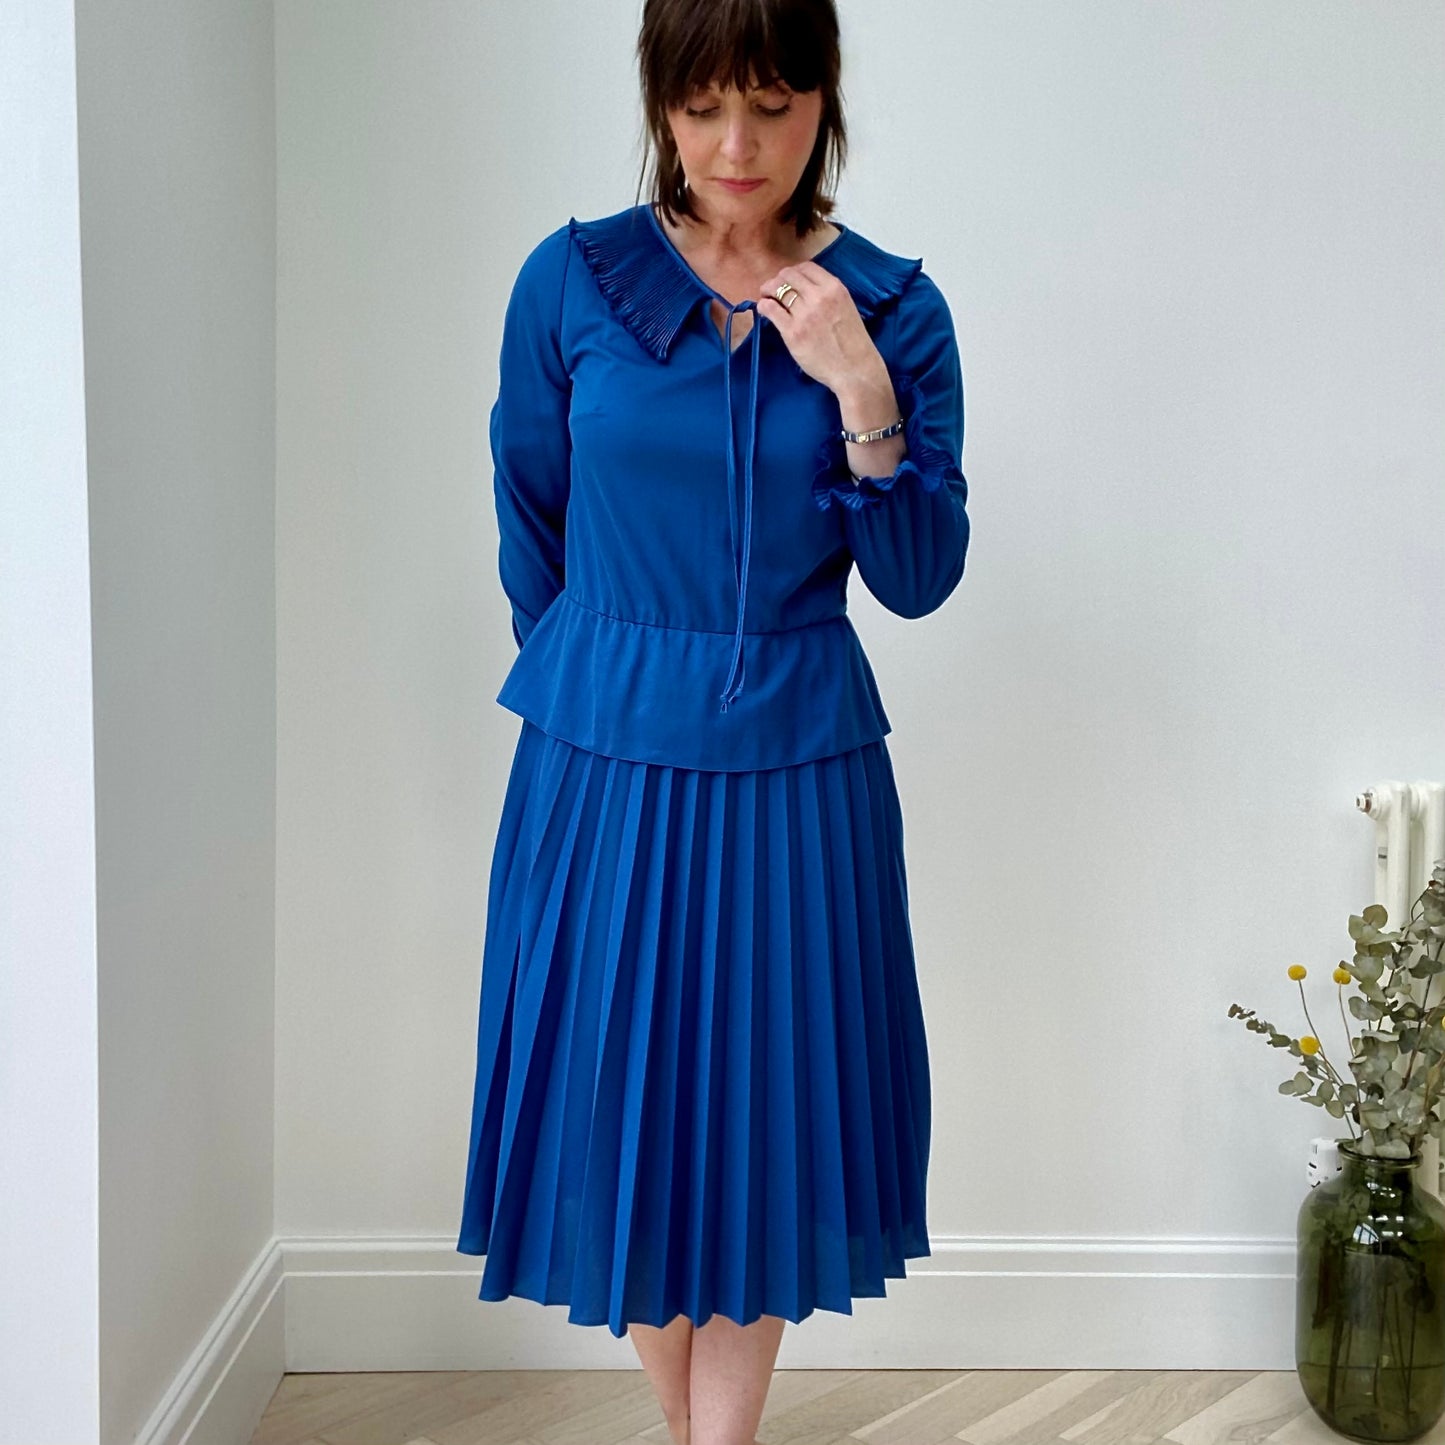 Blue Midi Dress was £38